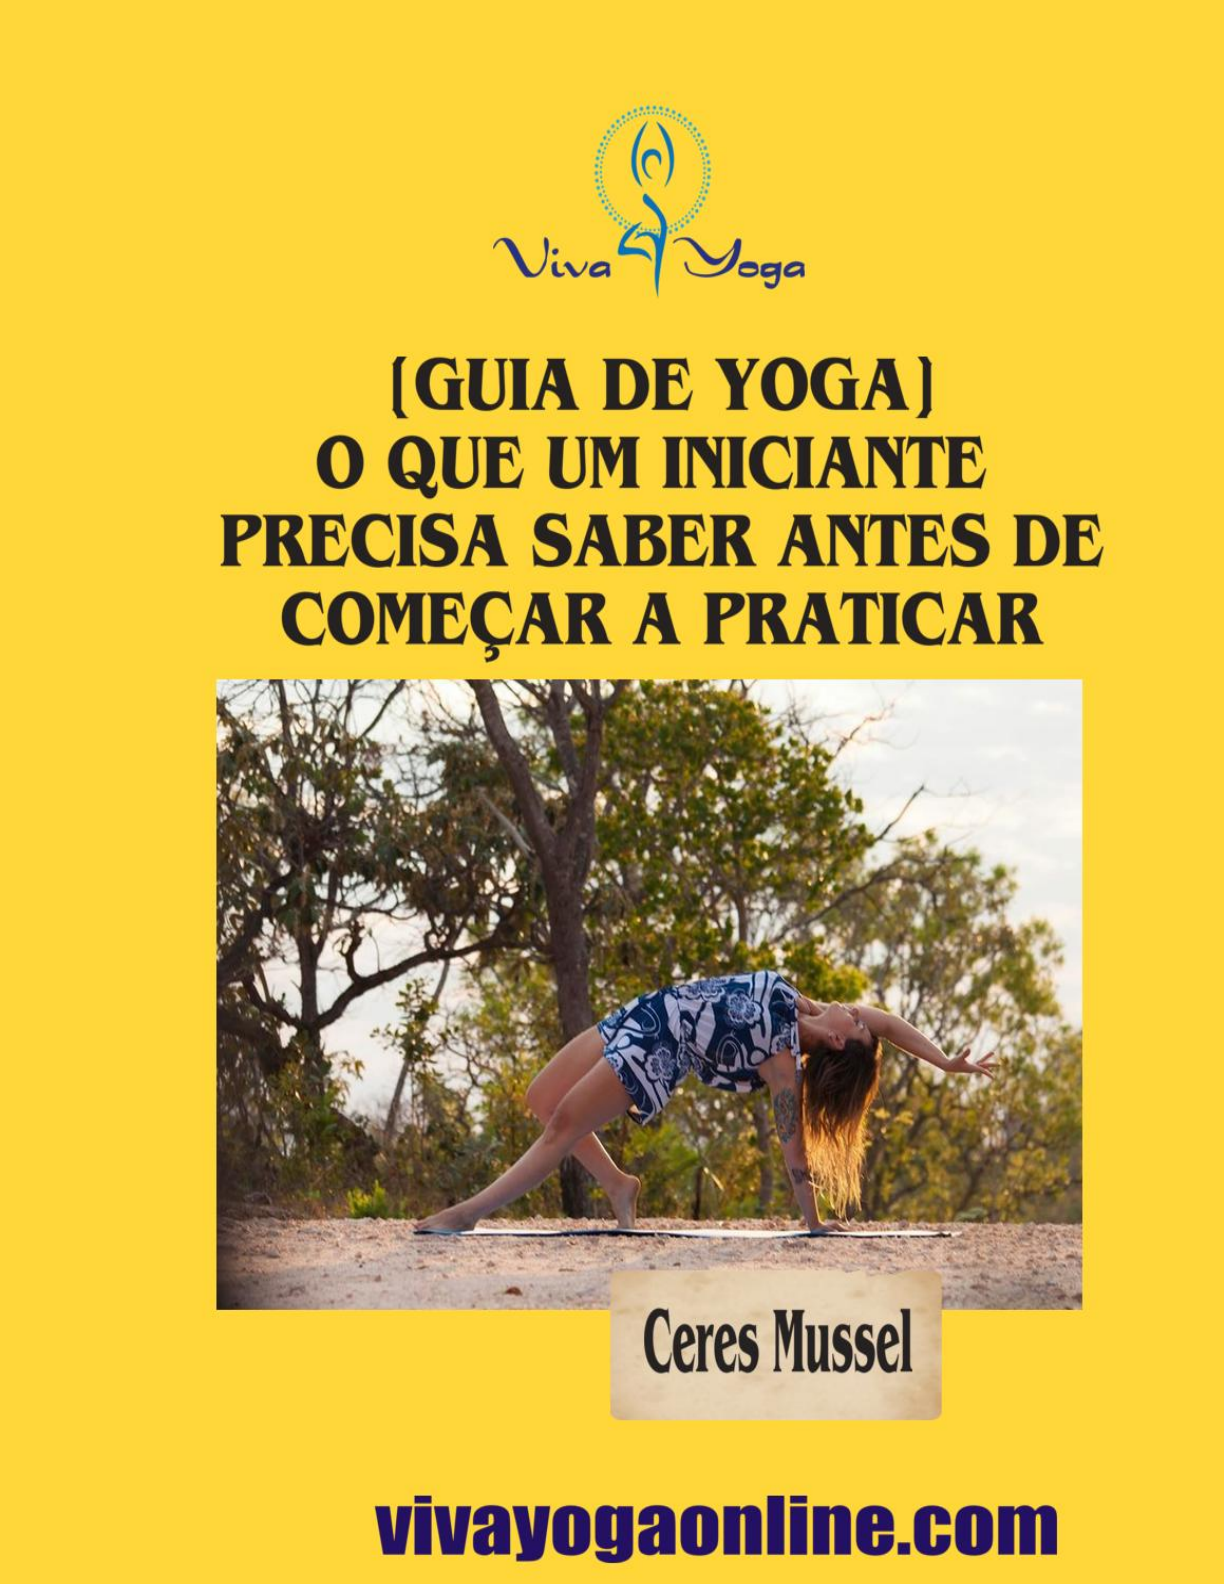 Yoga para iniciantes: um guia rápido para começar a praticar